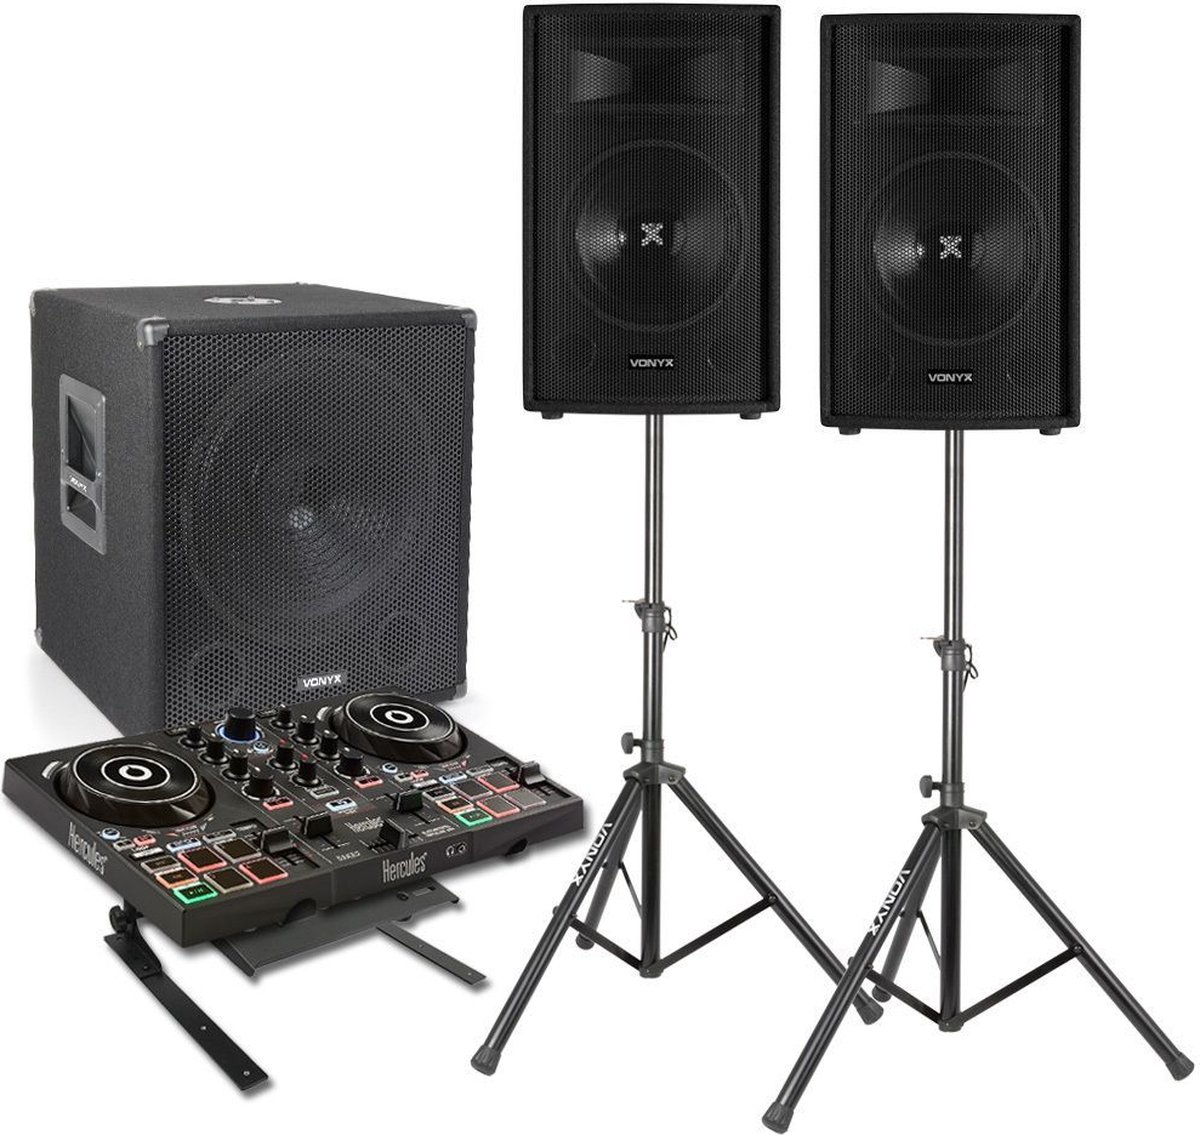 DJ set met Hercules DJ controller - Complete DJ set met 1100W geluidsinstallatie (subwoofer en tops) en Hercules Inpulse 200 controller - Zwart - Hercules